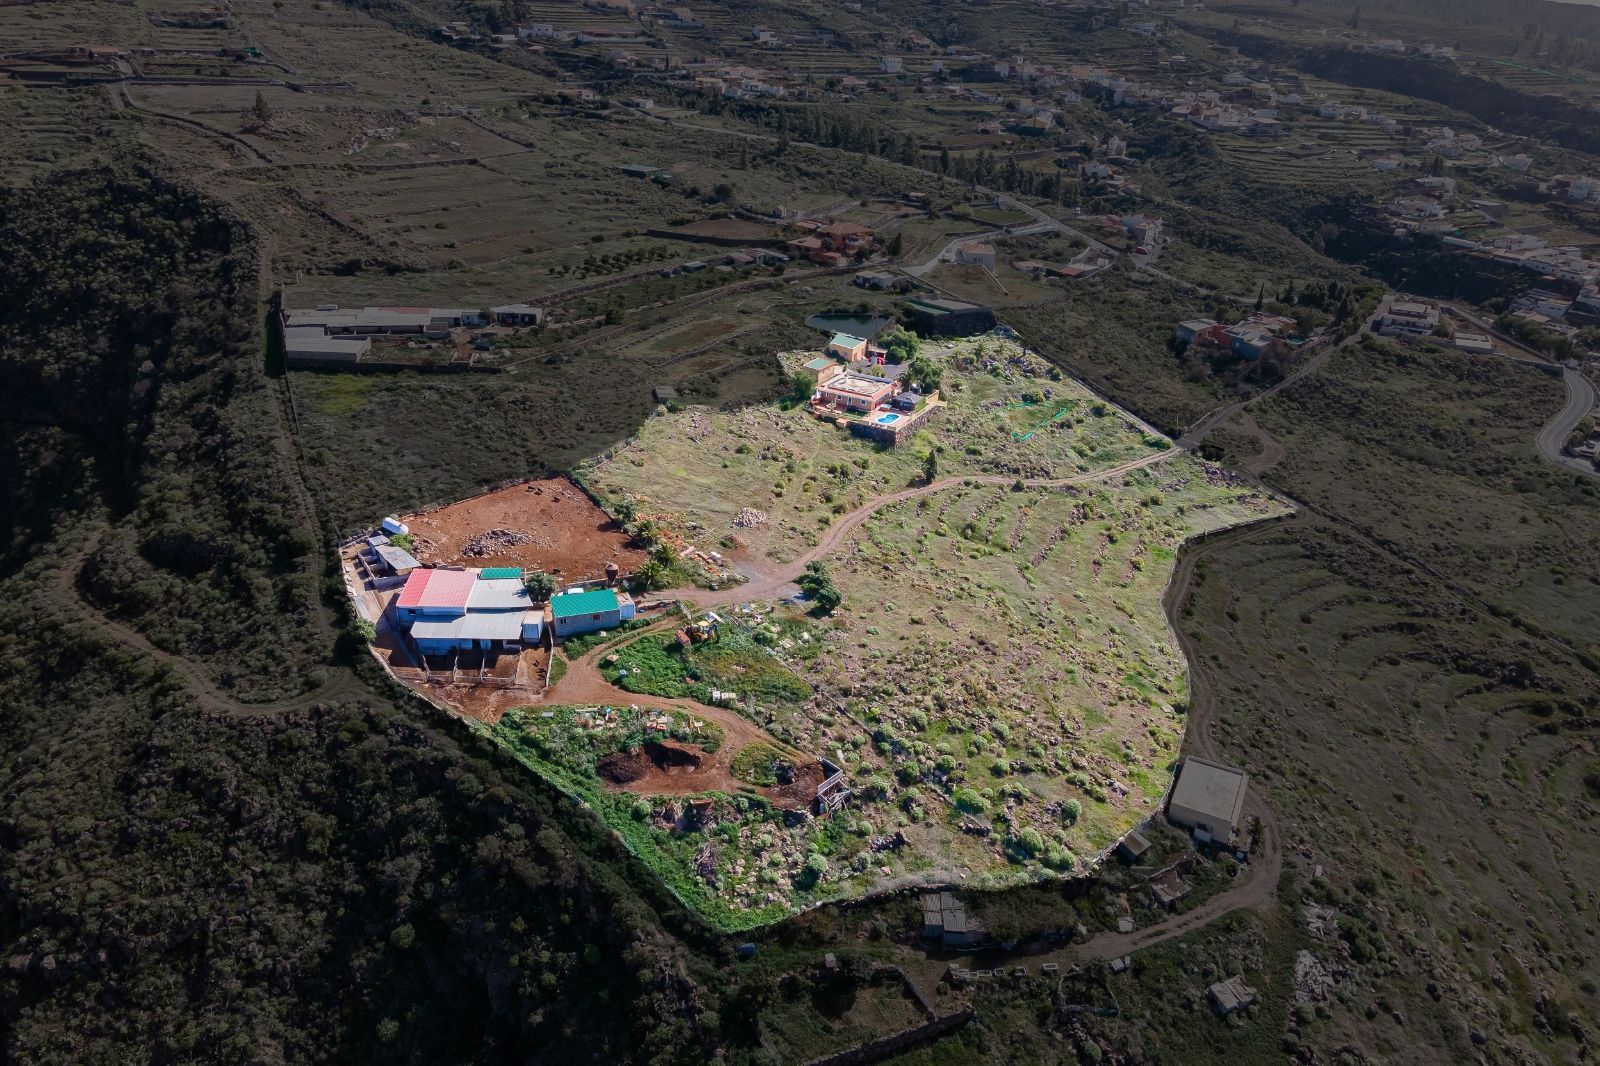 Villa te koop in Tenerife 46